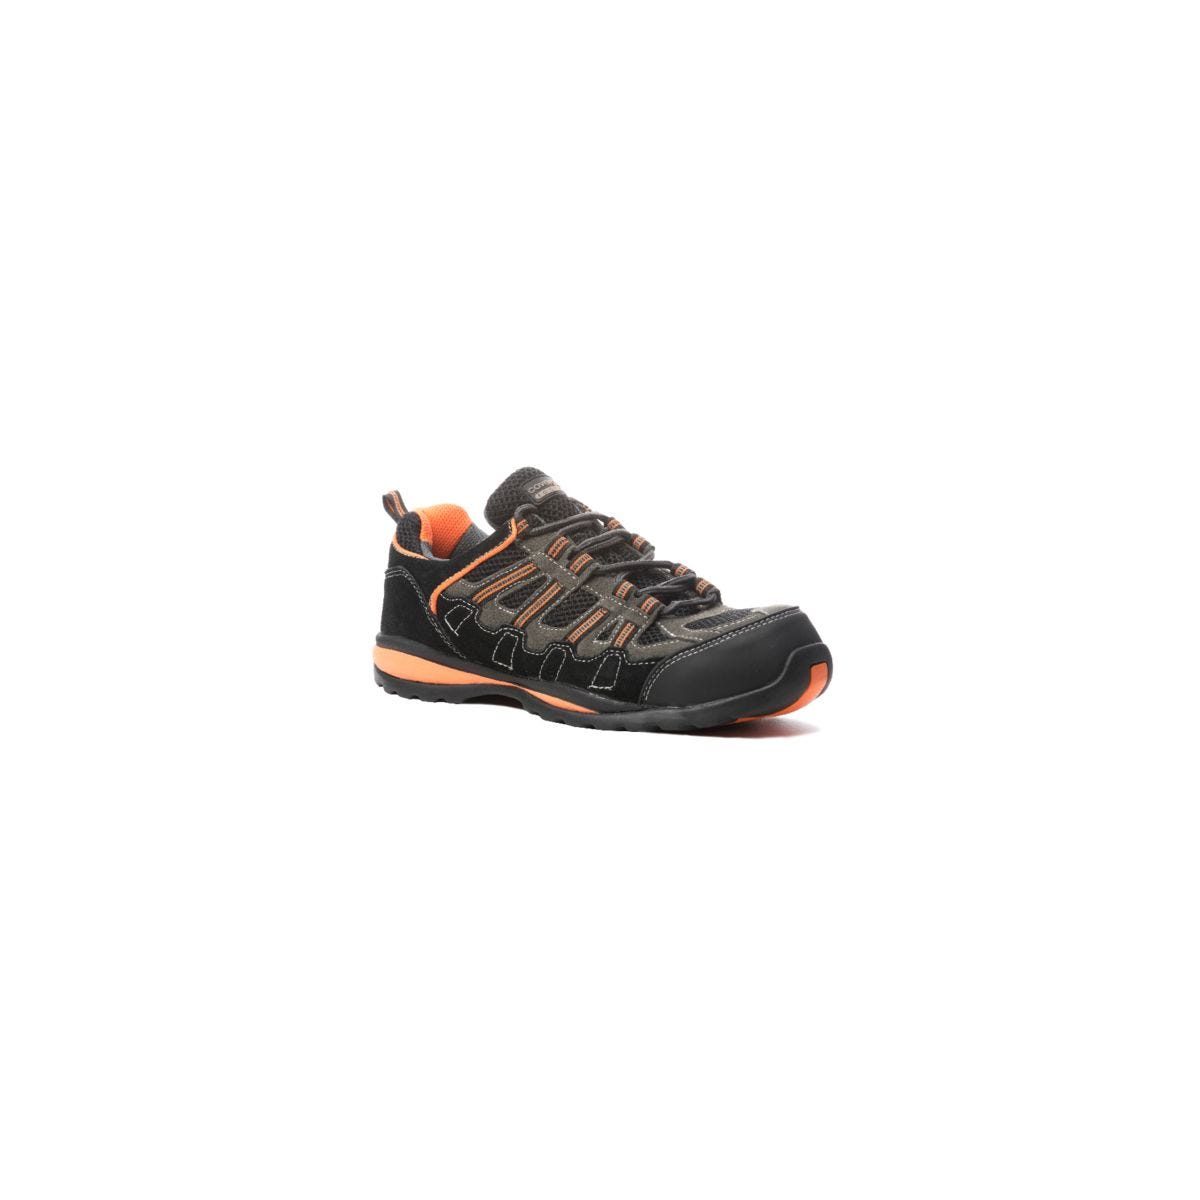 Chaussures de sécurité HELVITE S1P composite noir/orange - COVERGUARD - Taille 45 0